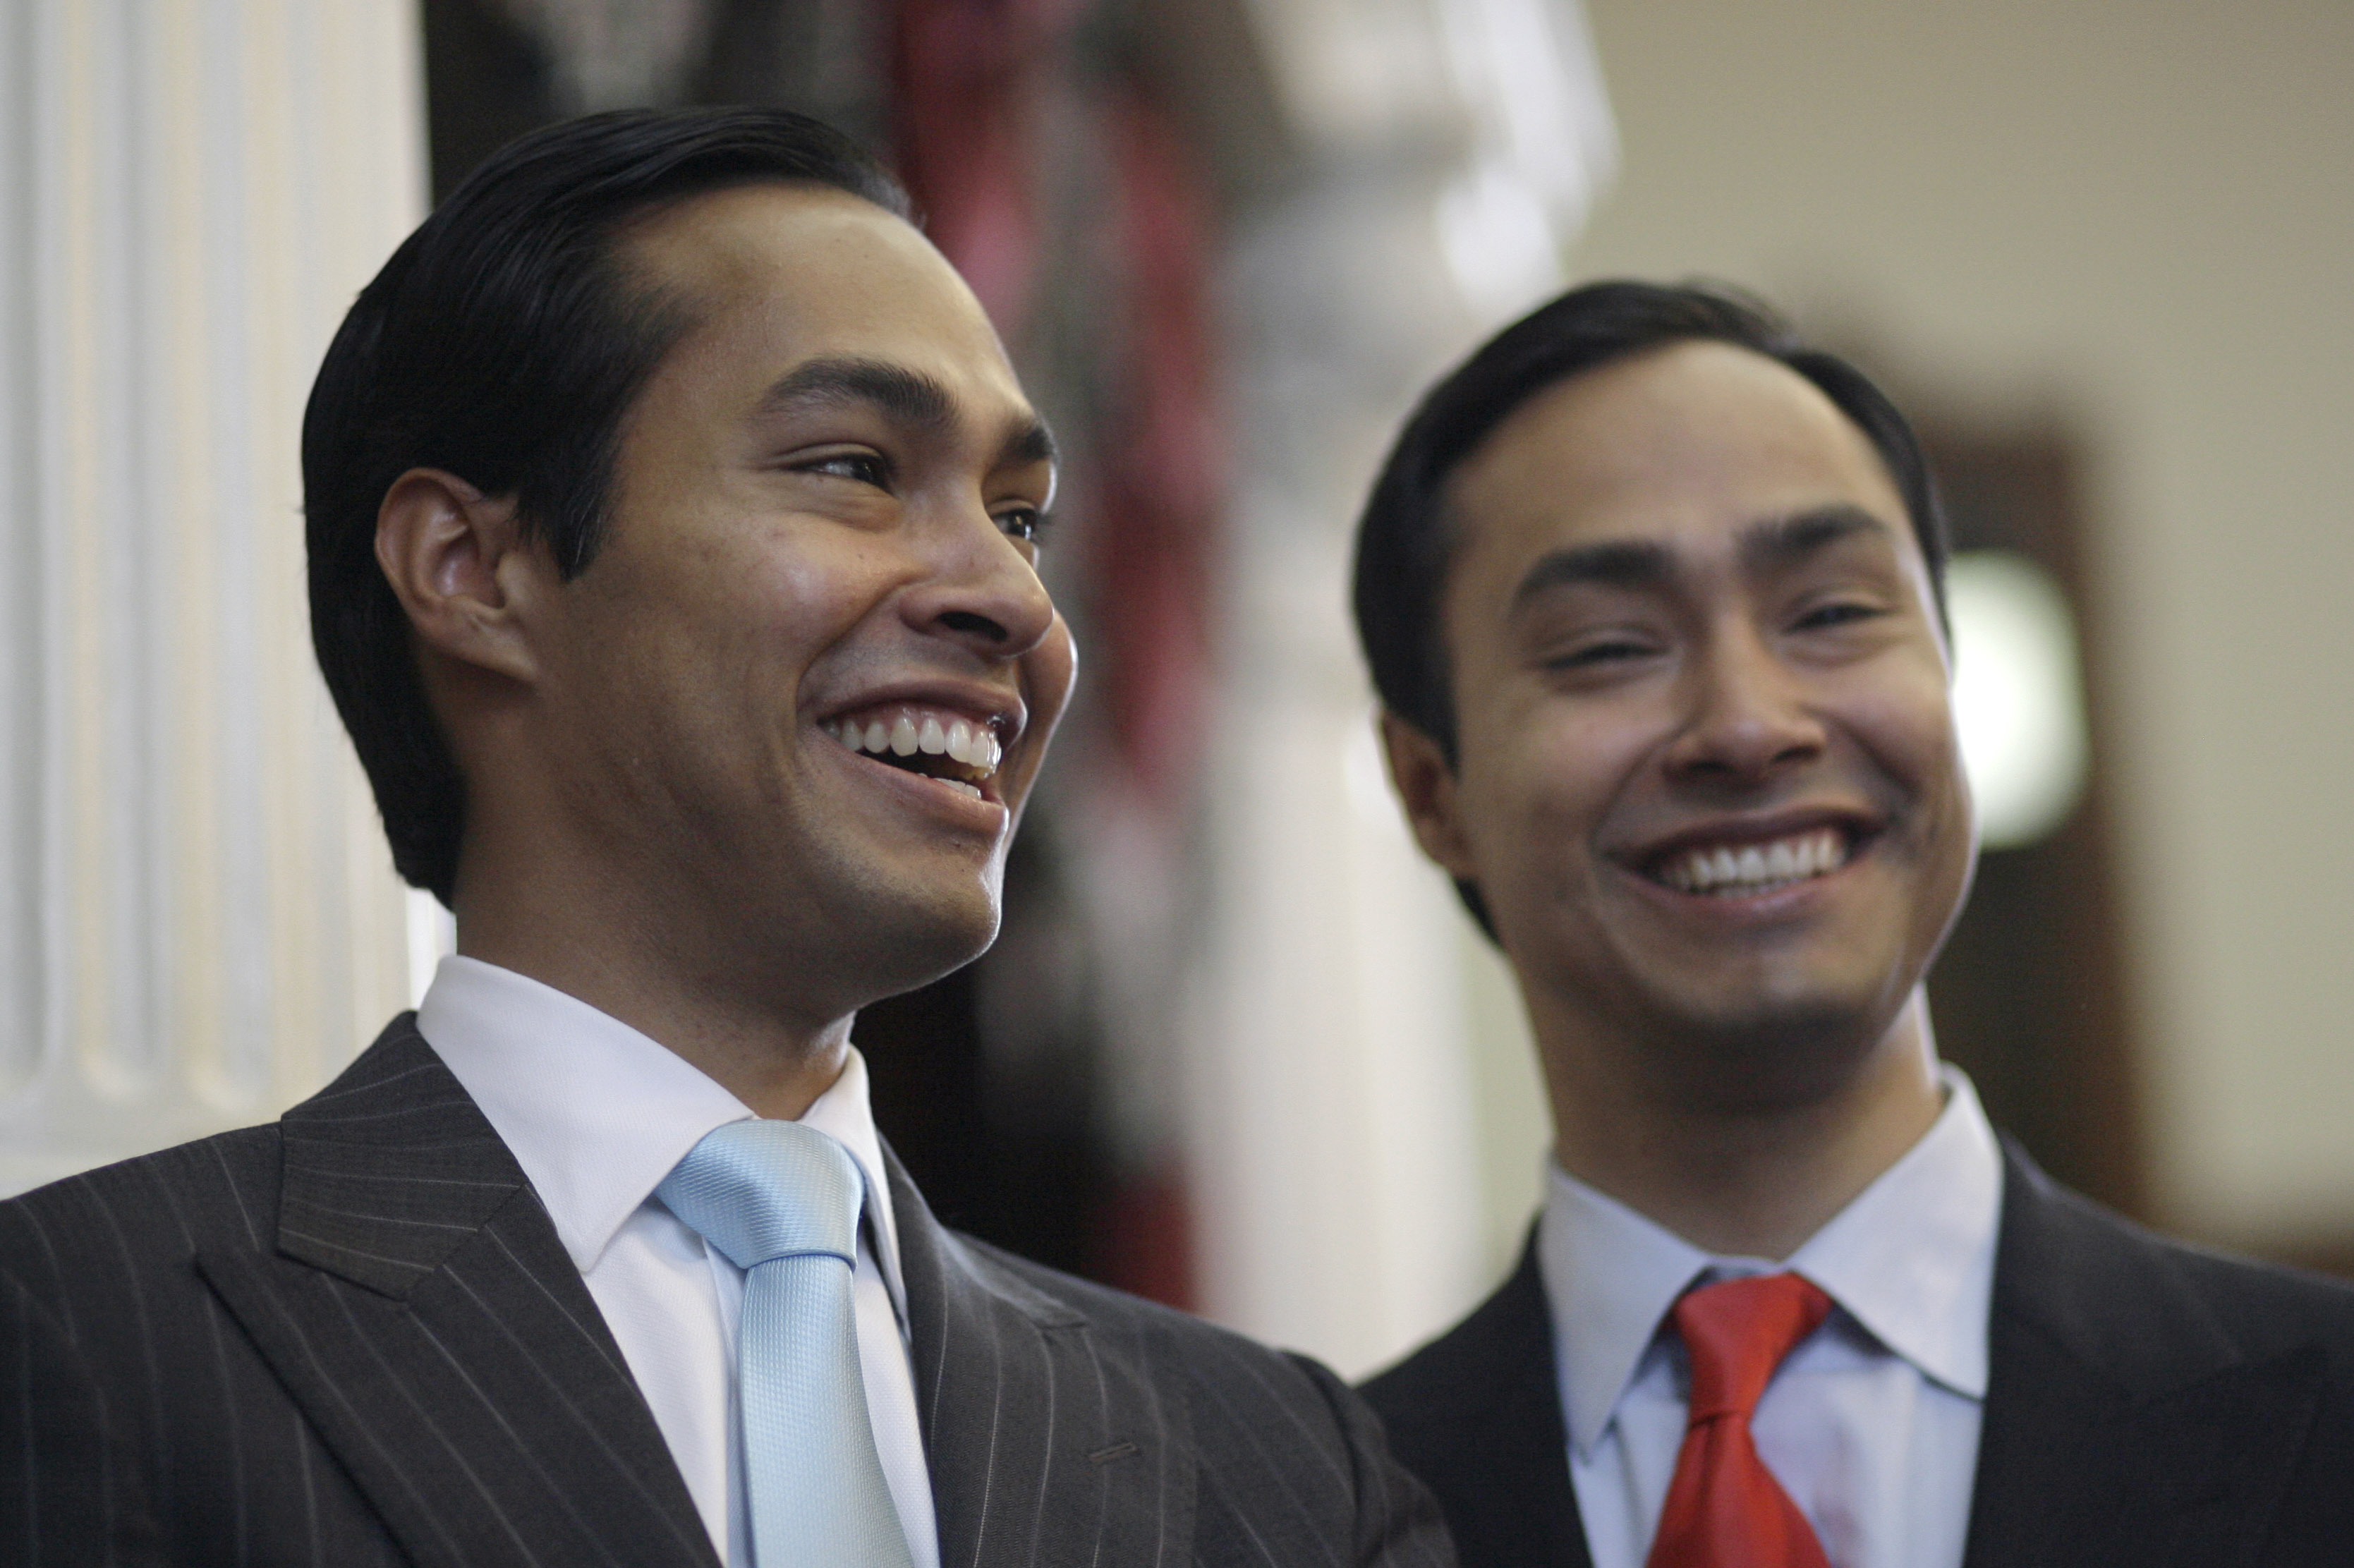 Meet Julian and Joaquin Castro, rising Democratic stars